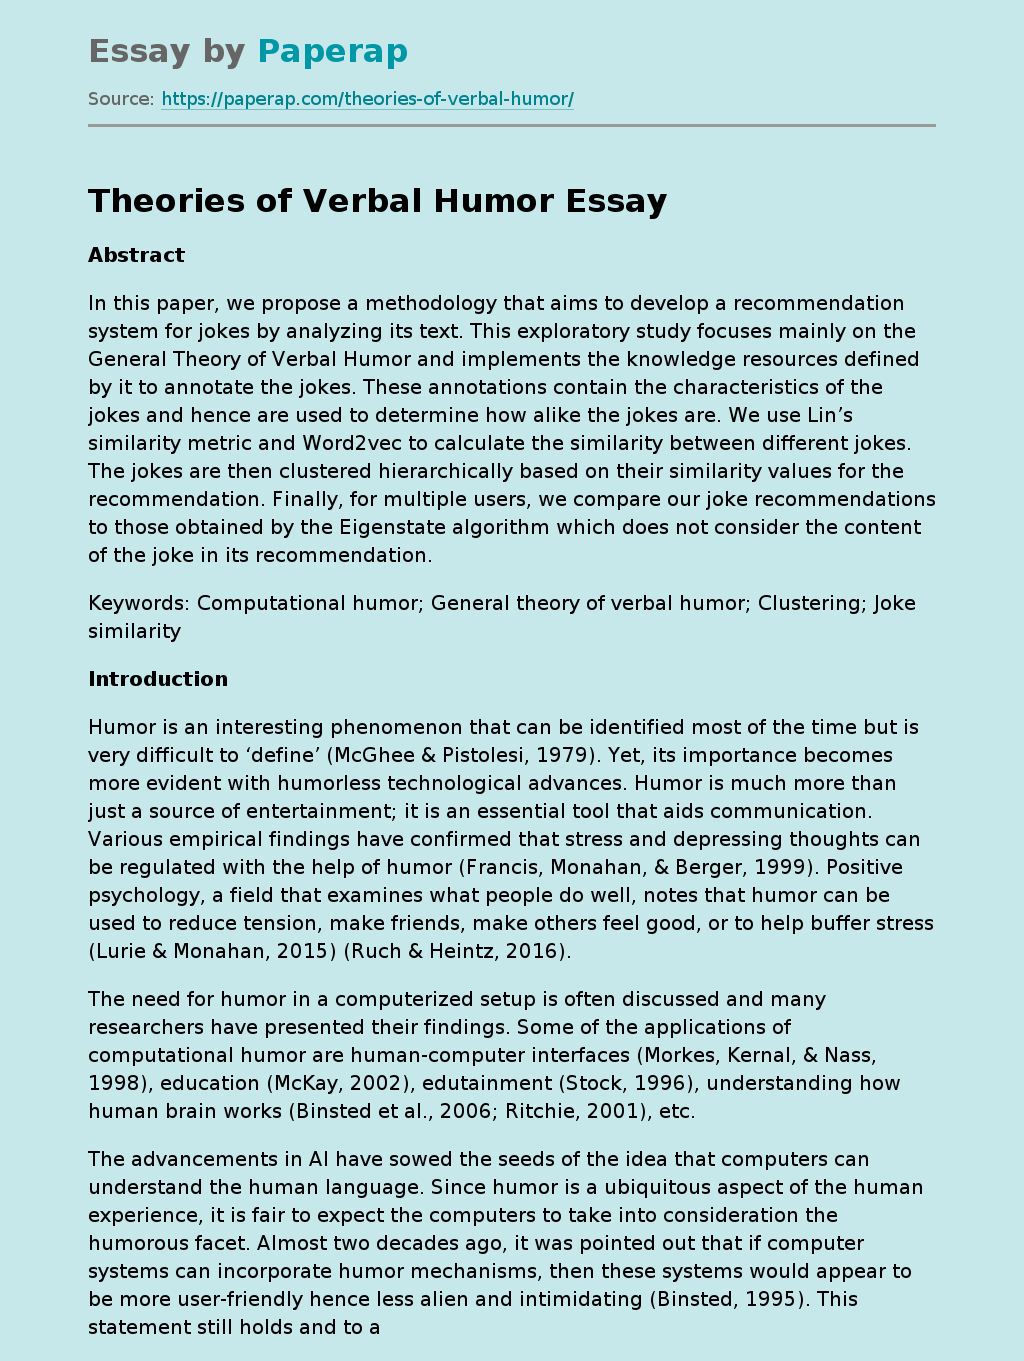 Theories of Verbal Humor